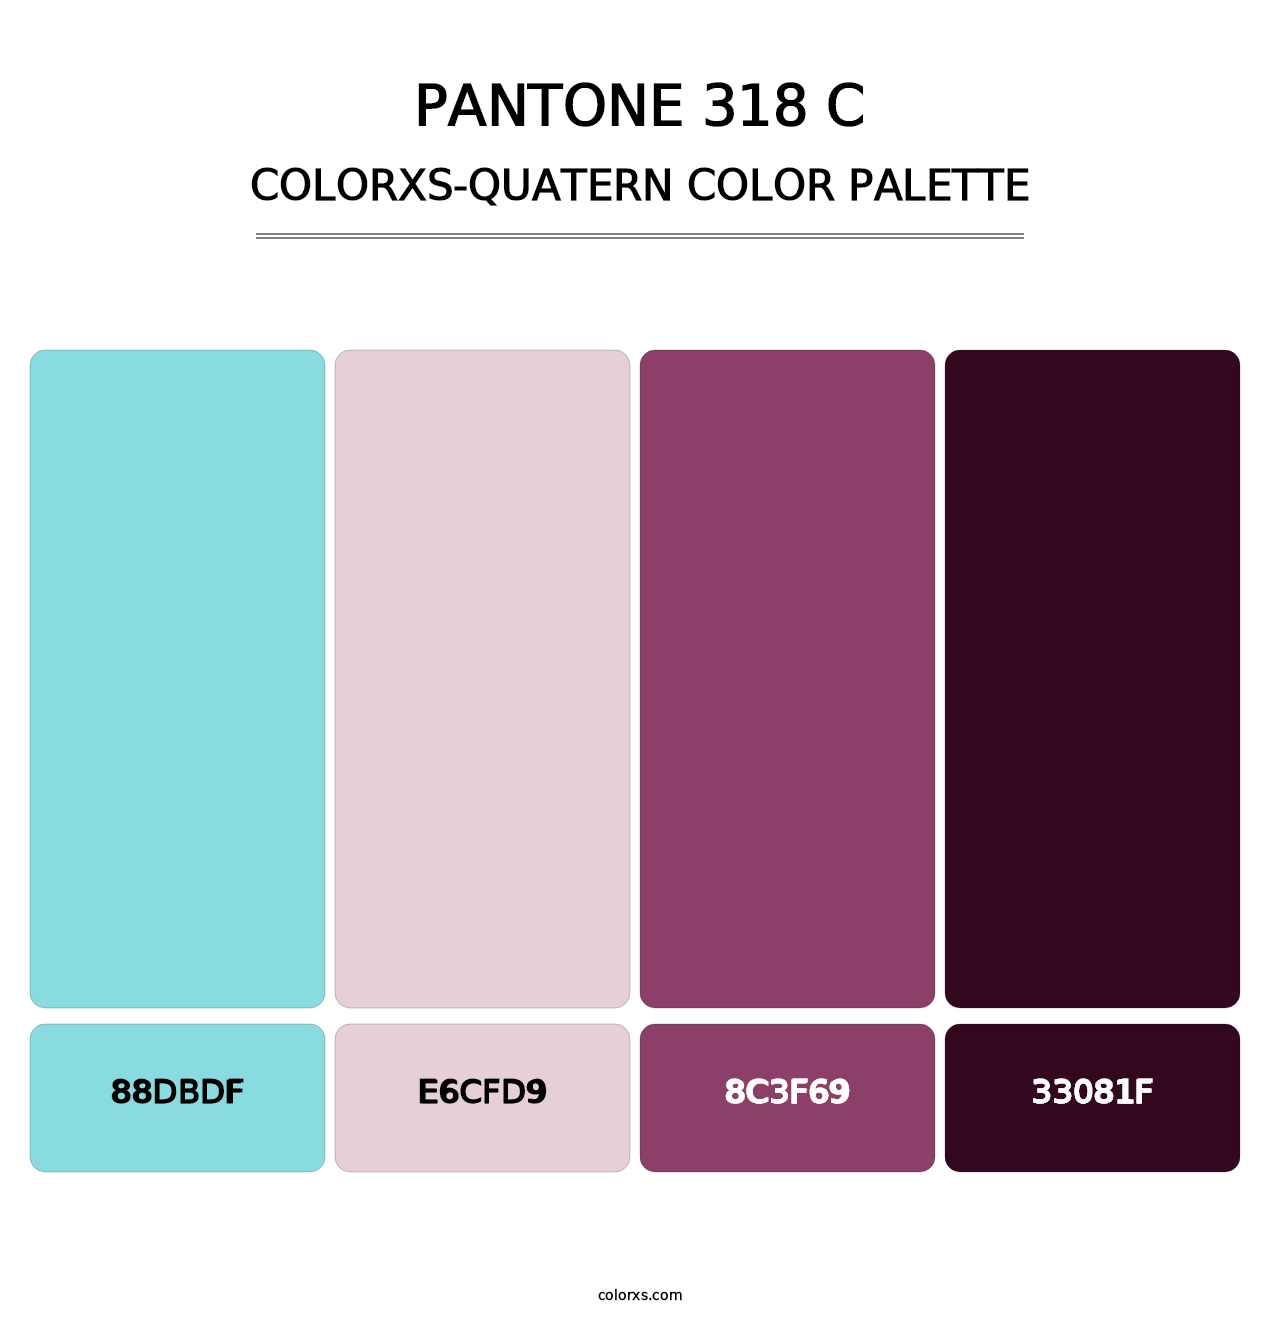 PANTONE 318 C - Colorxs Quatern Palette